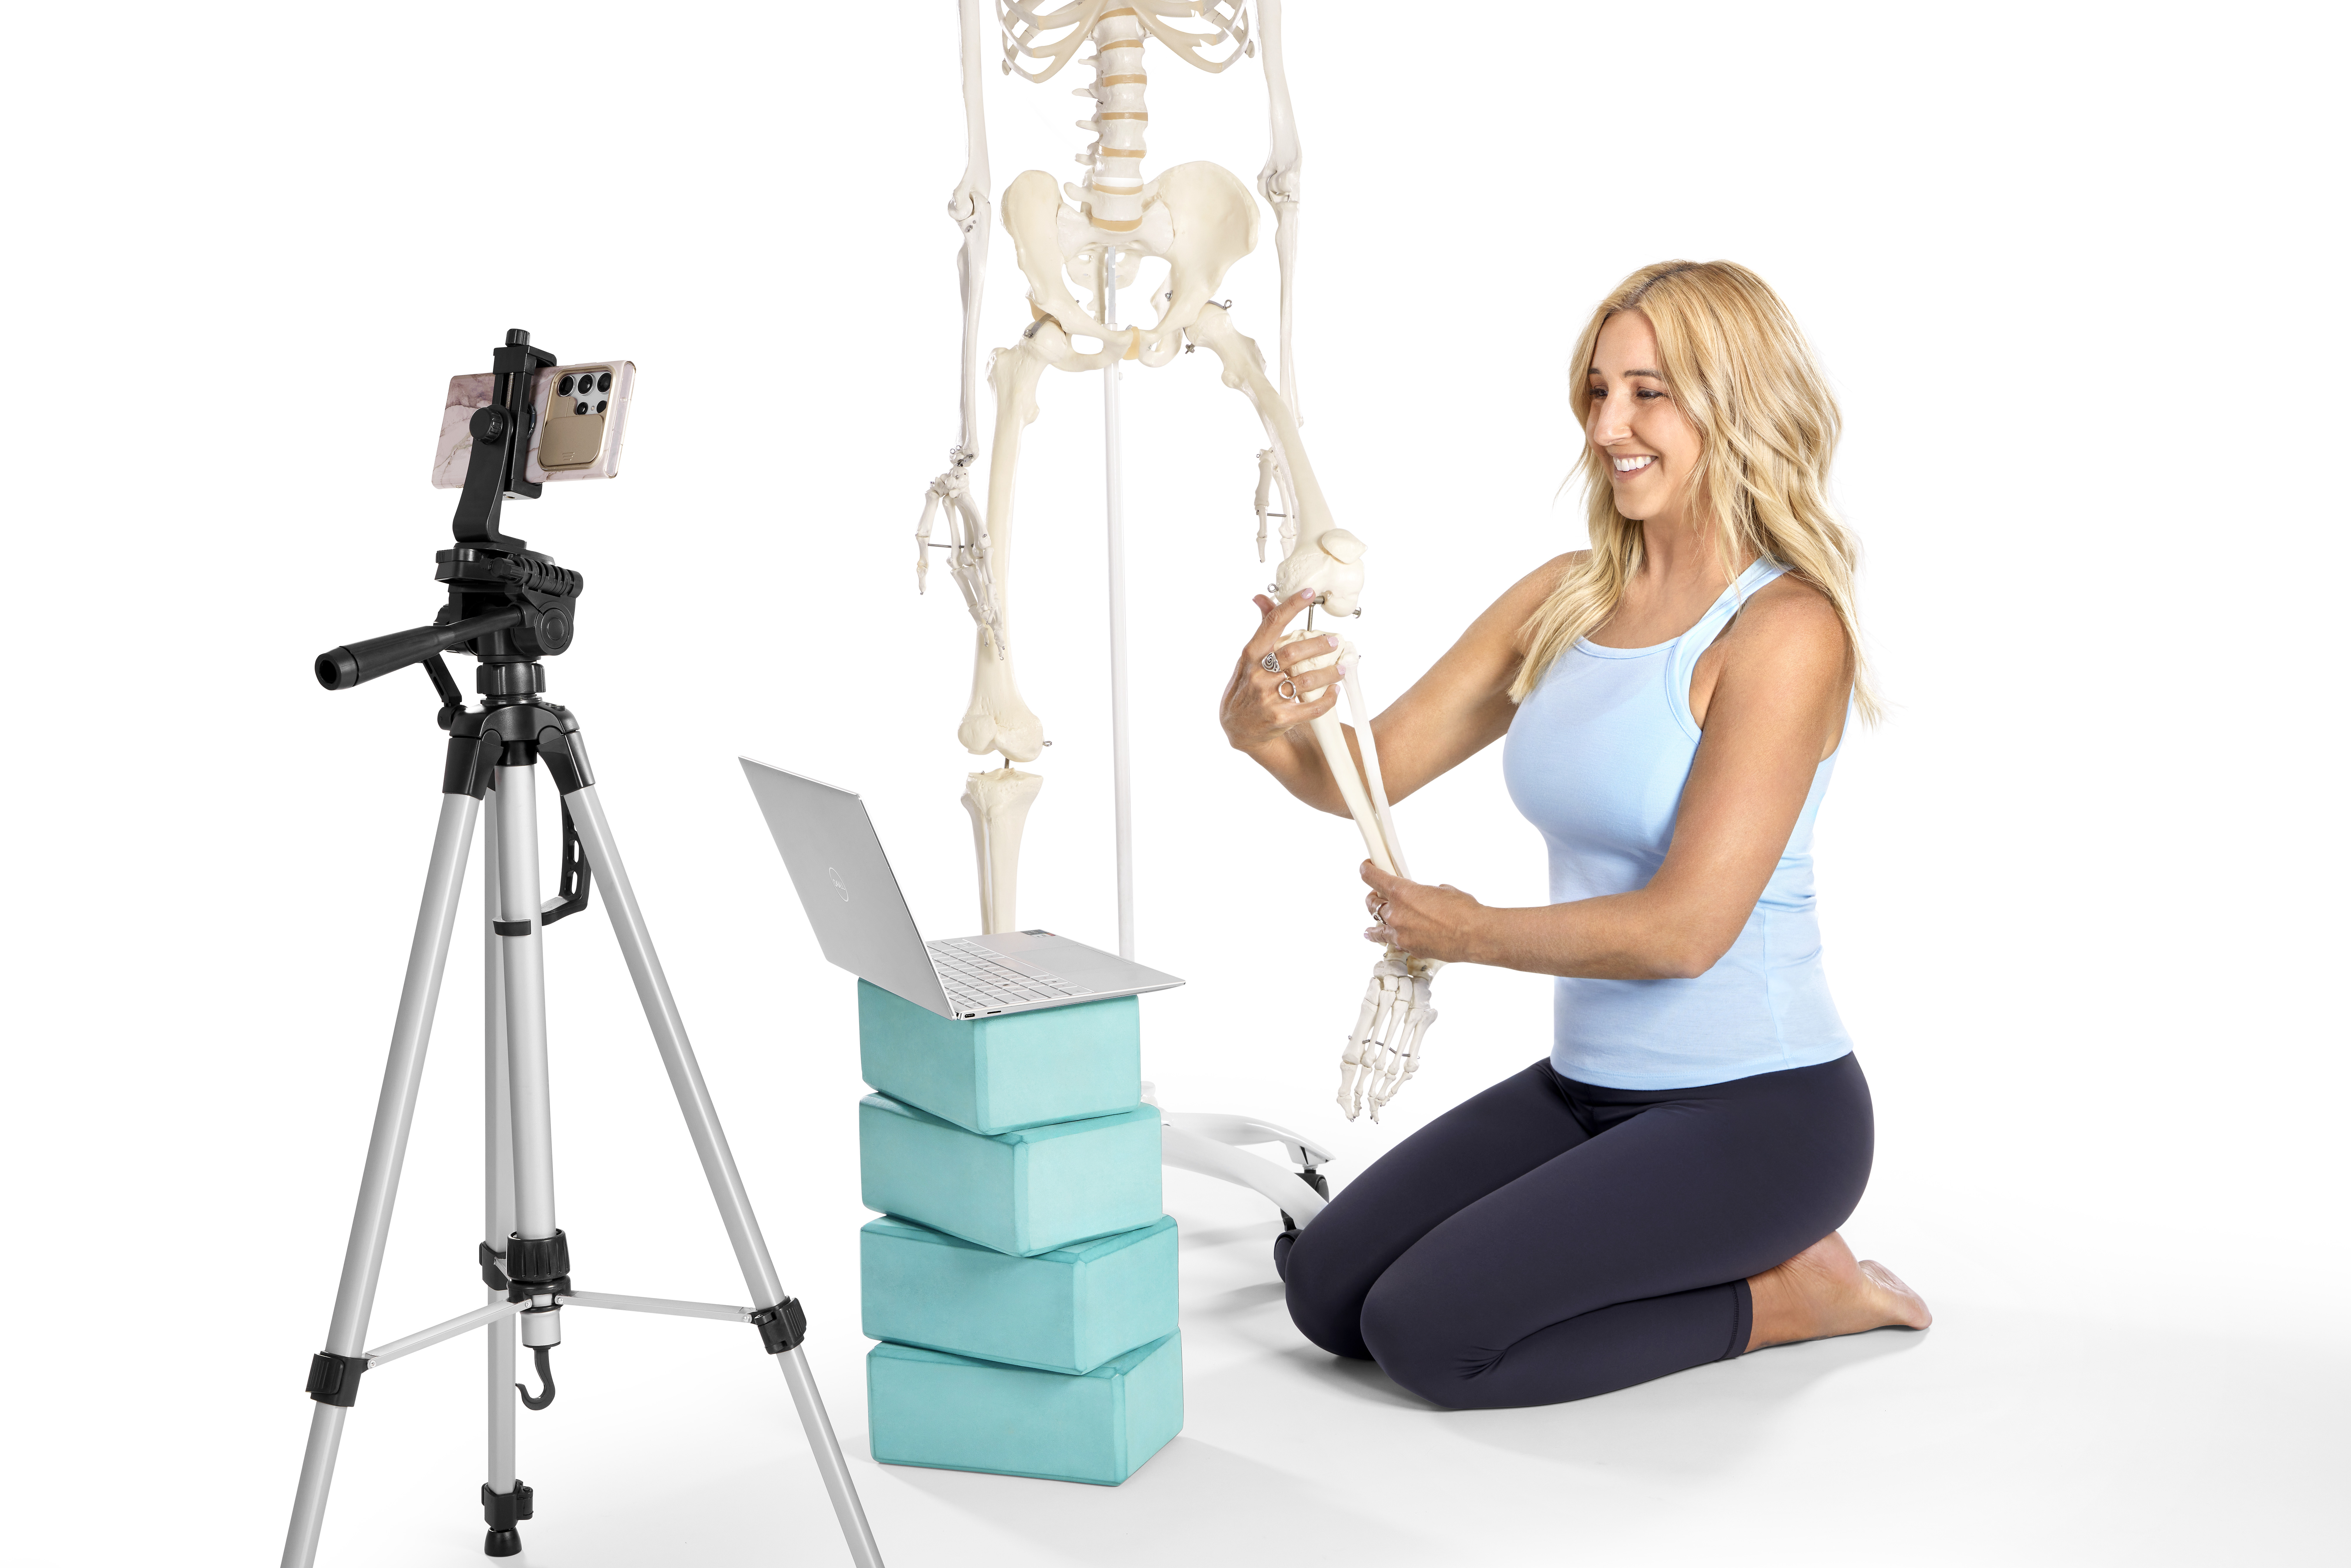 Jules Mitchell teaching yoga teachers anatomy and biomechanics online